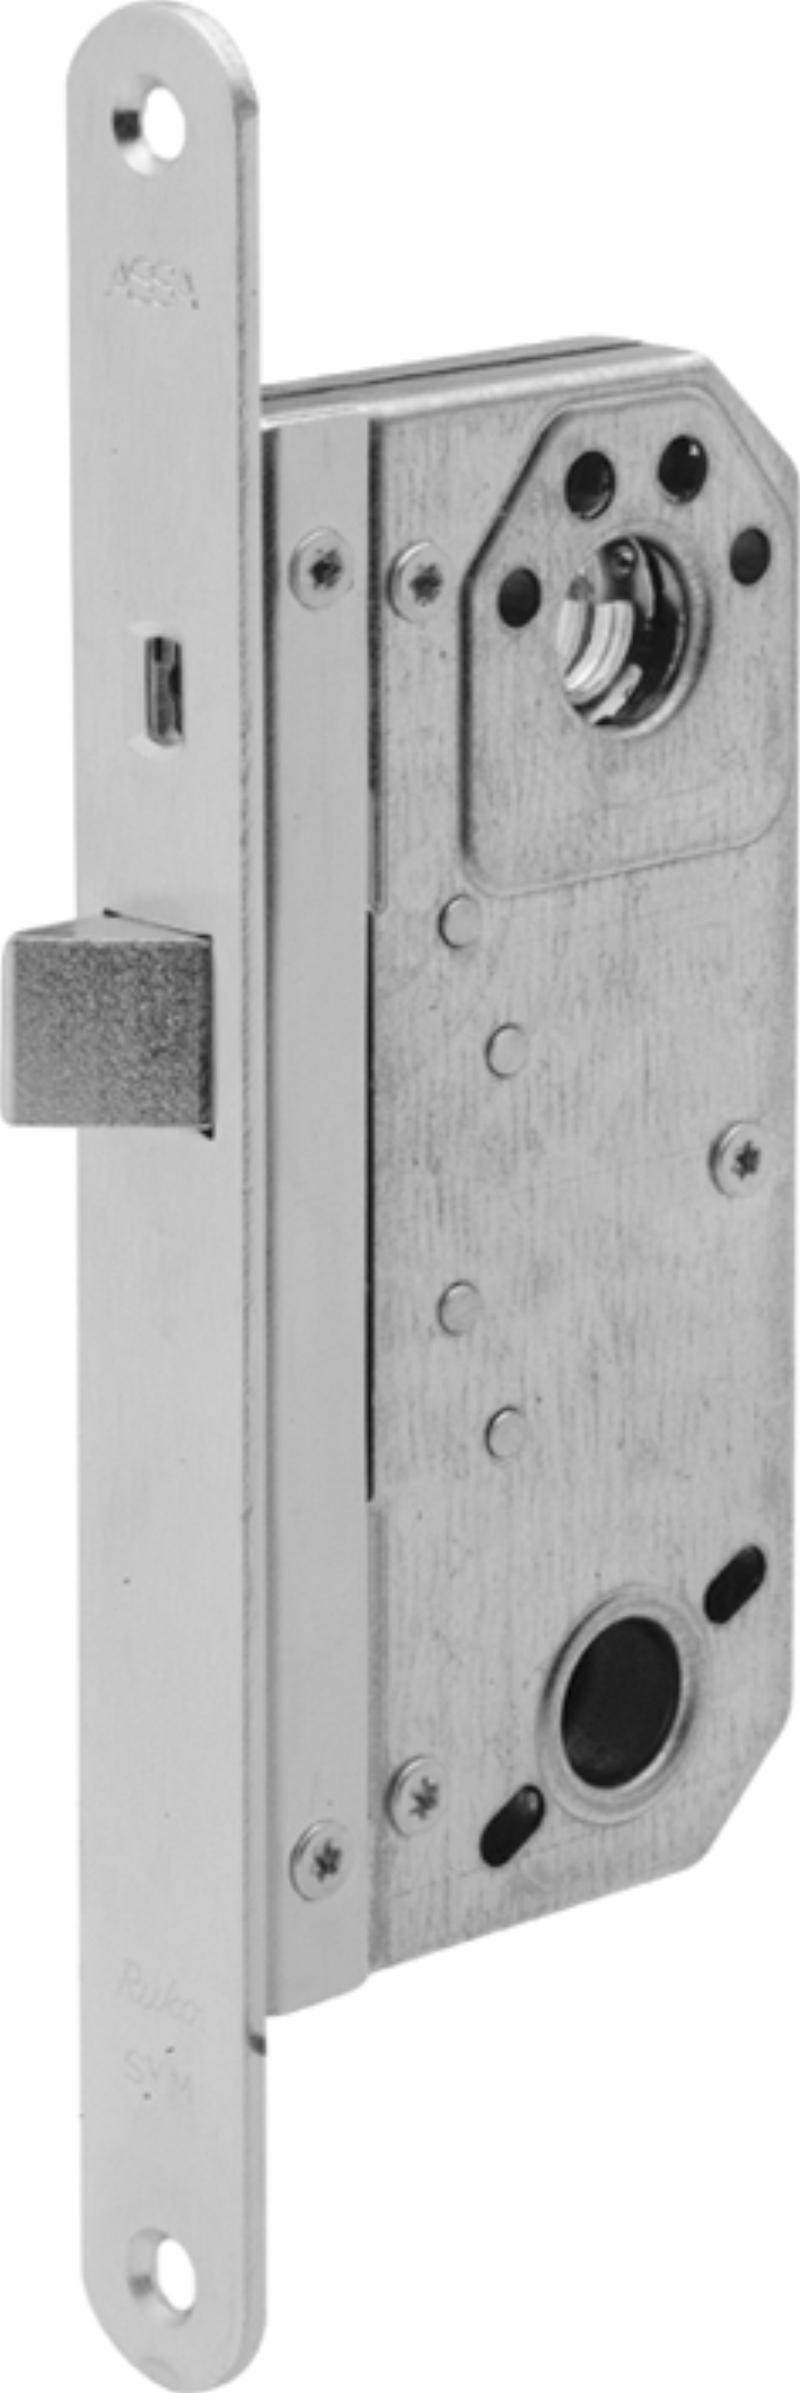 Assa lock box 6580 u/tin